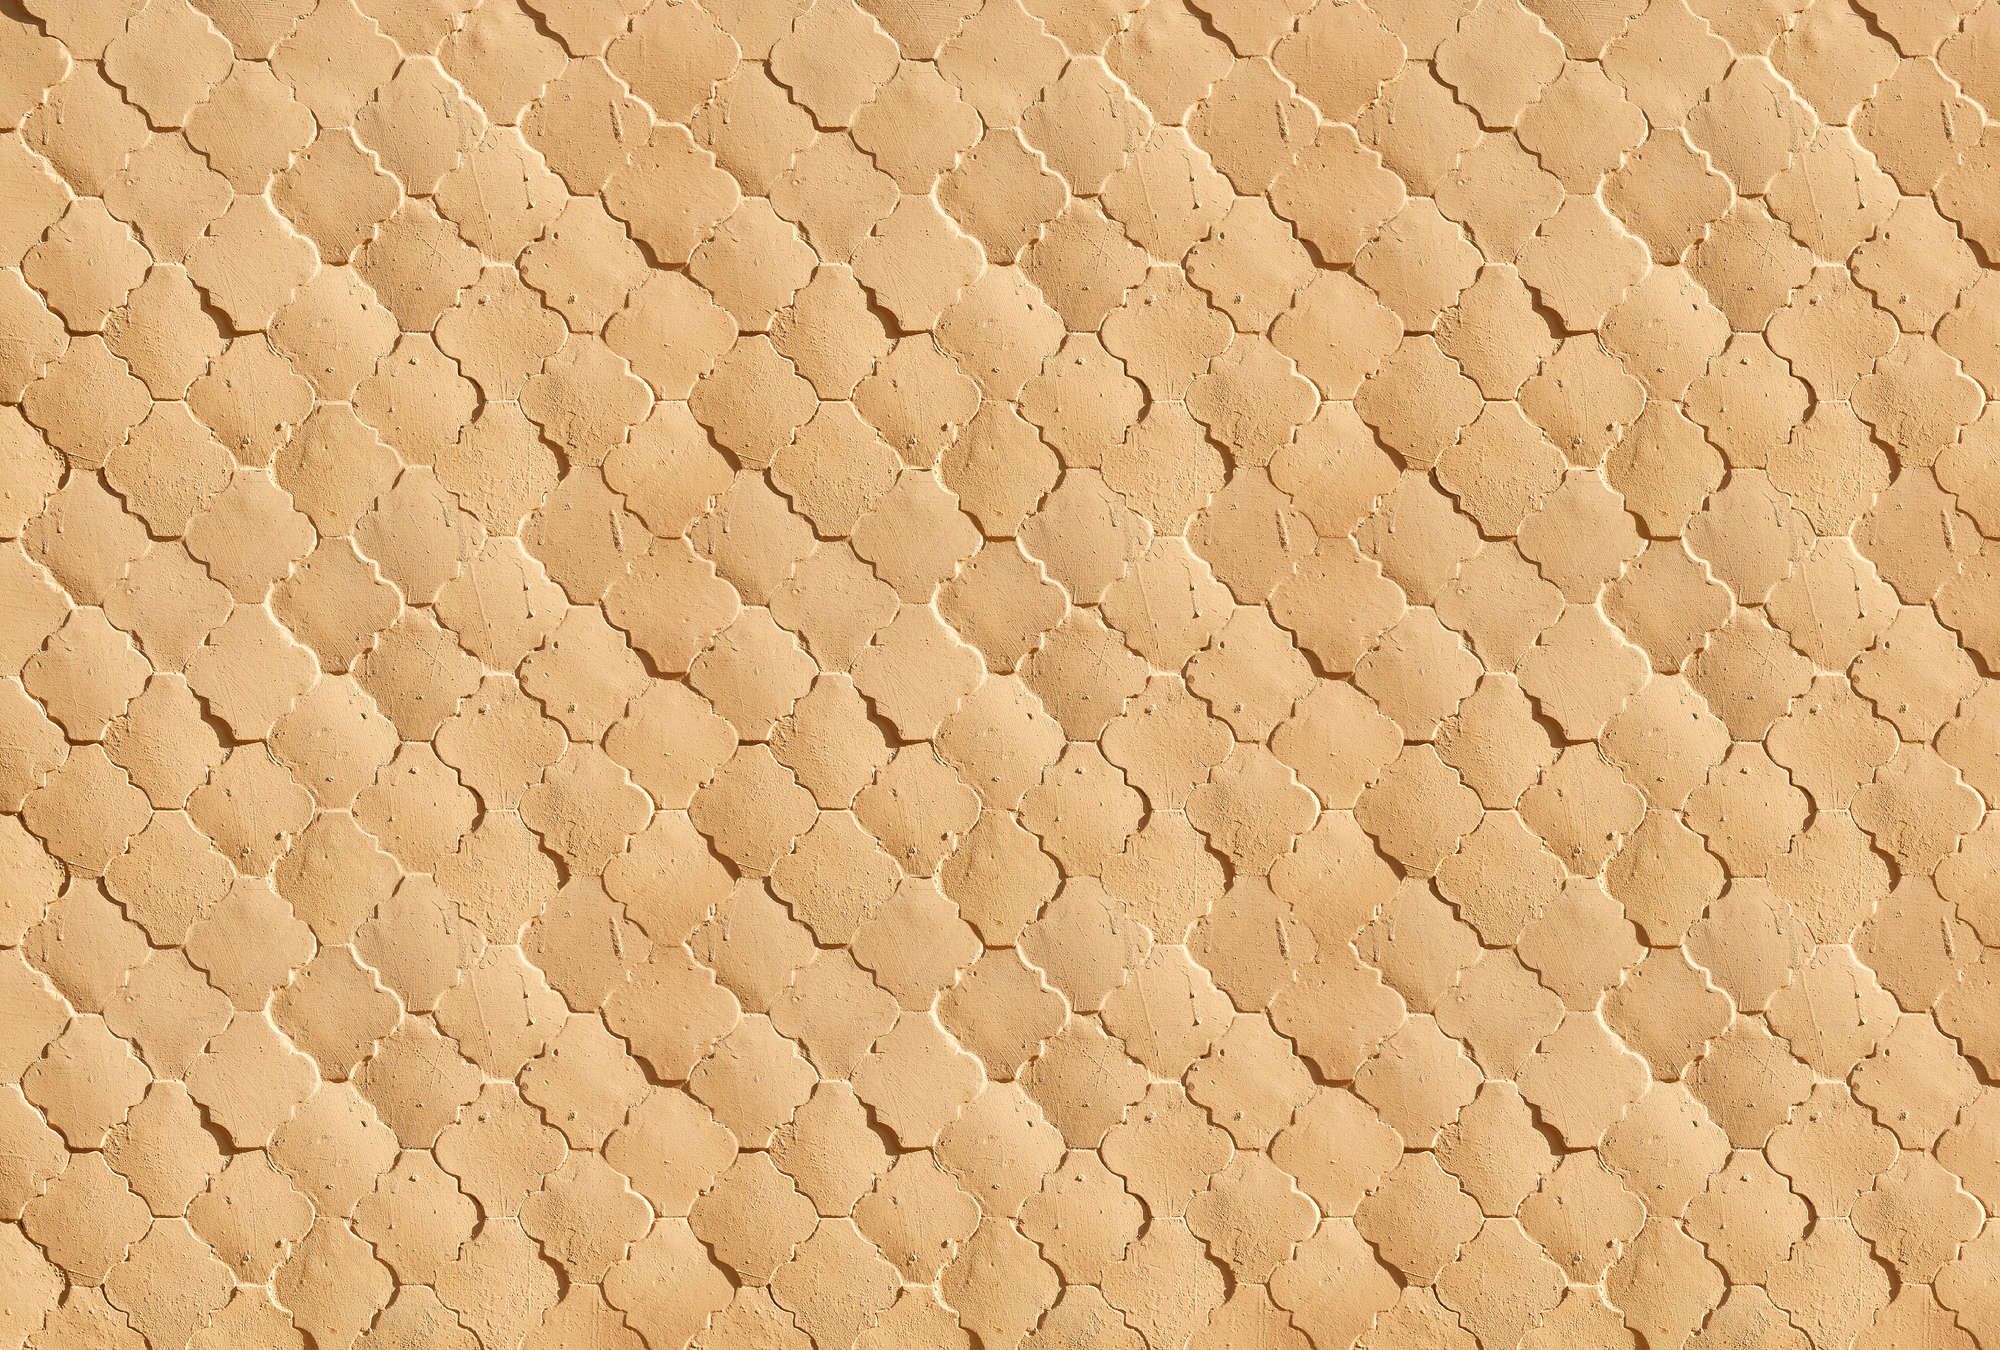             Fotomuralis »siena« - Motivo mediterraneo a piastrelle nei colori della sabbia - Materiali non tessuto liscio, leggermente perlato e scintillante
        